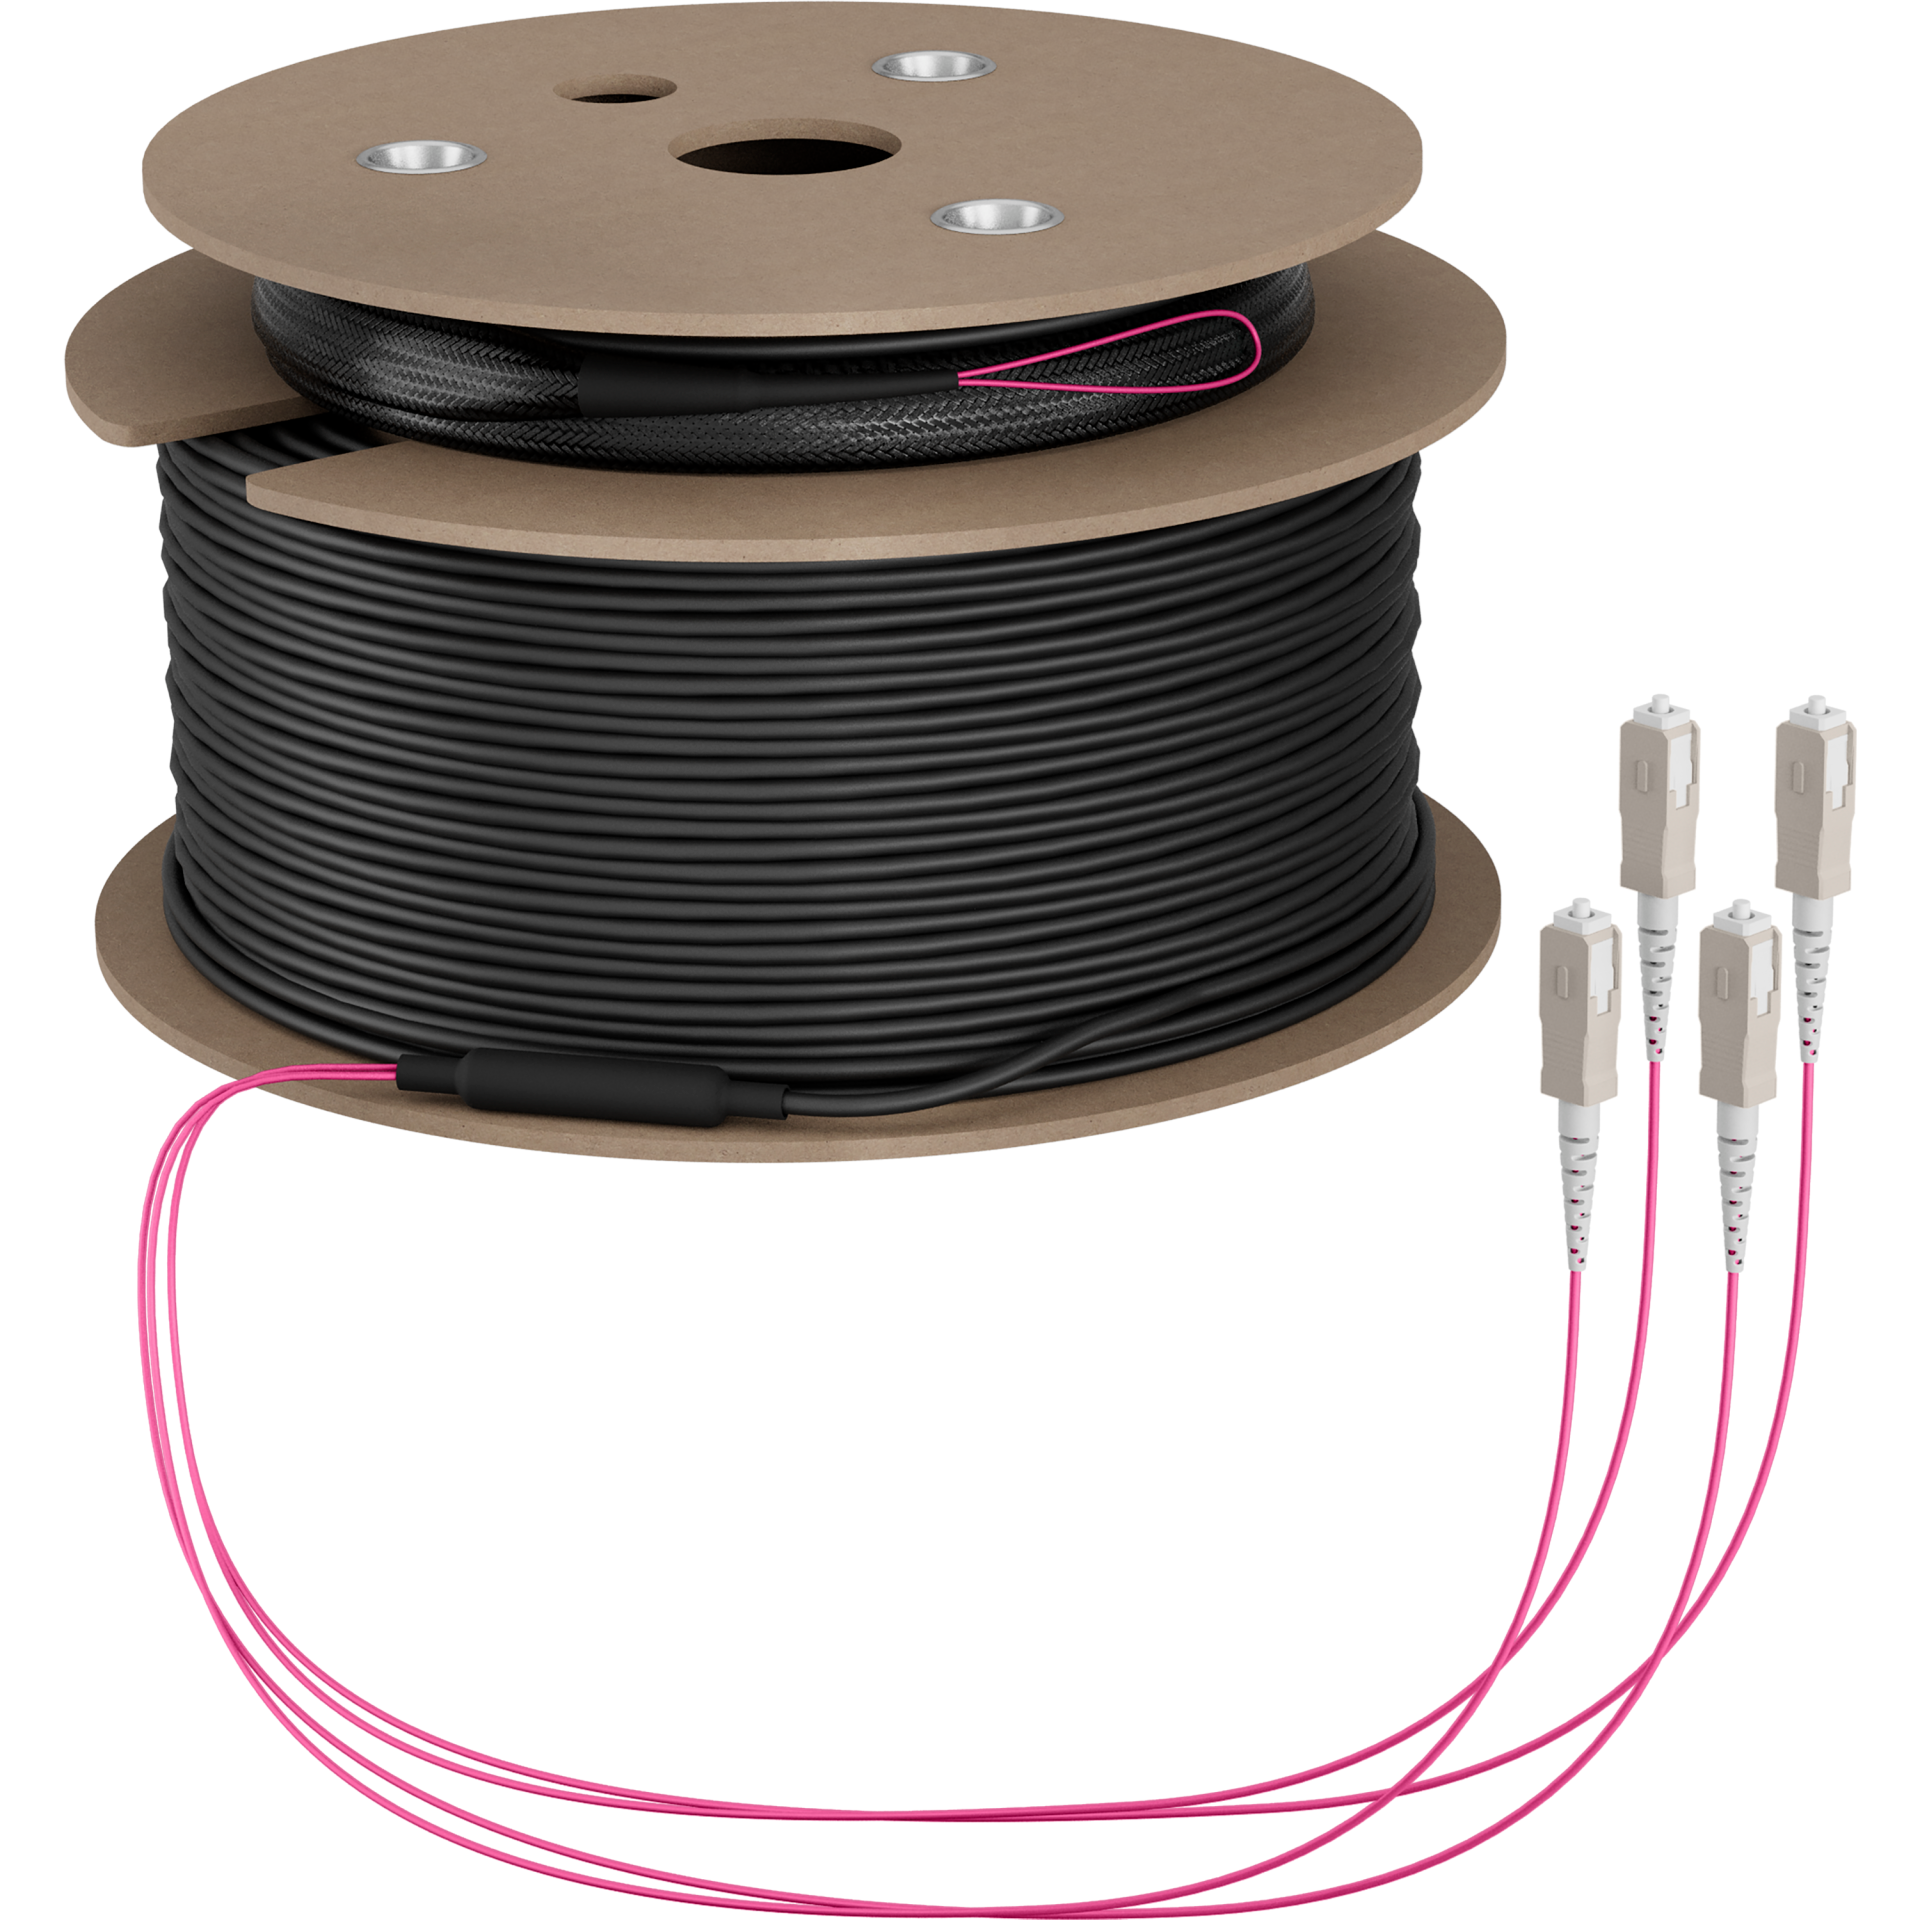 Trunk cable U-DQ(ZN)BH OM4 4G (1x4) SC-SC,70m Dca LSZH